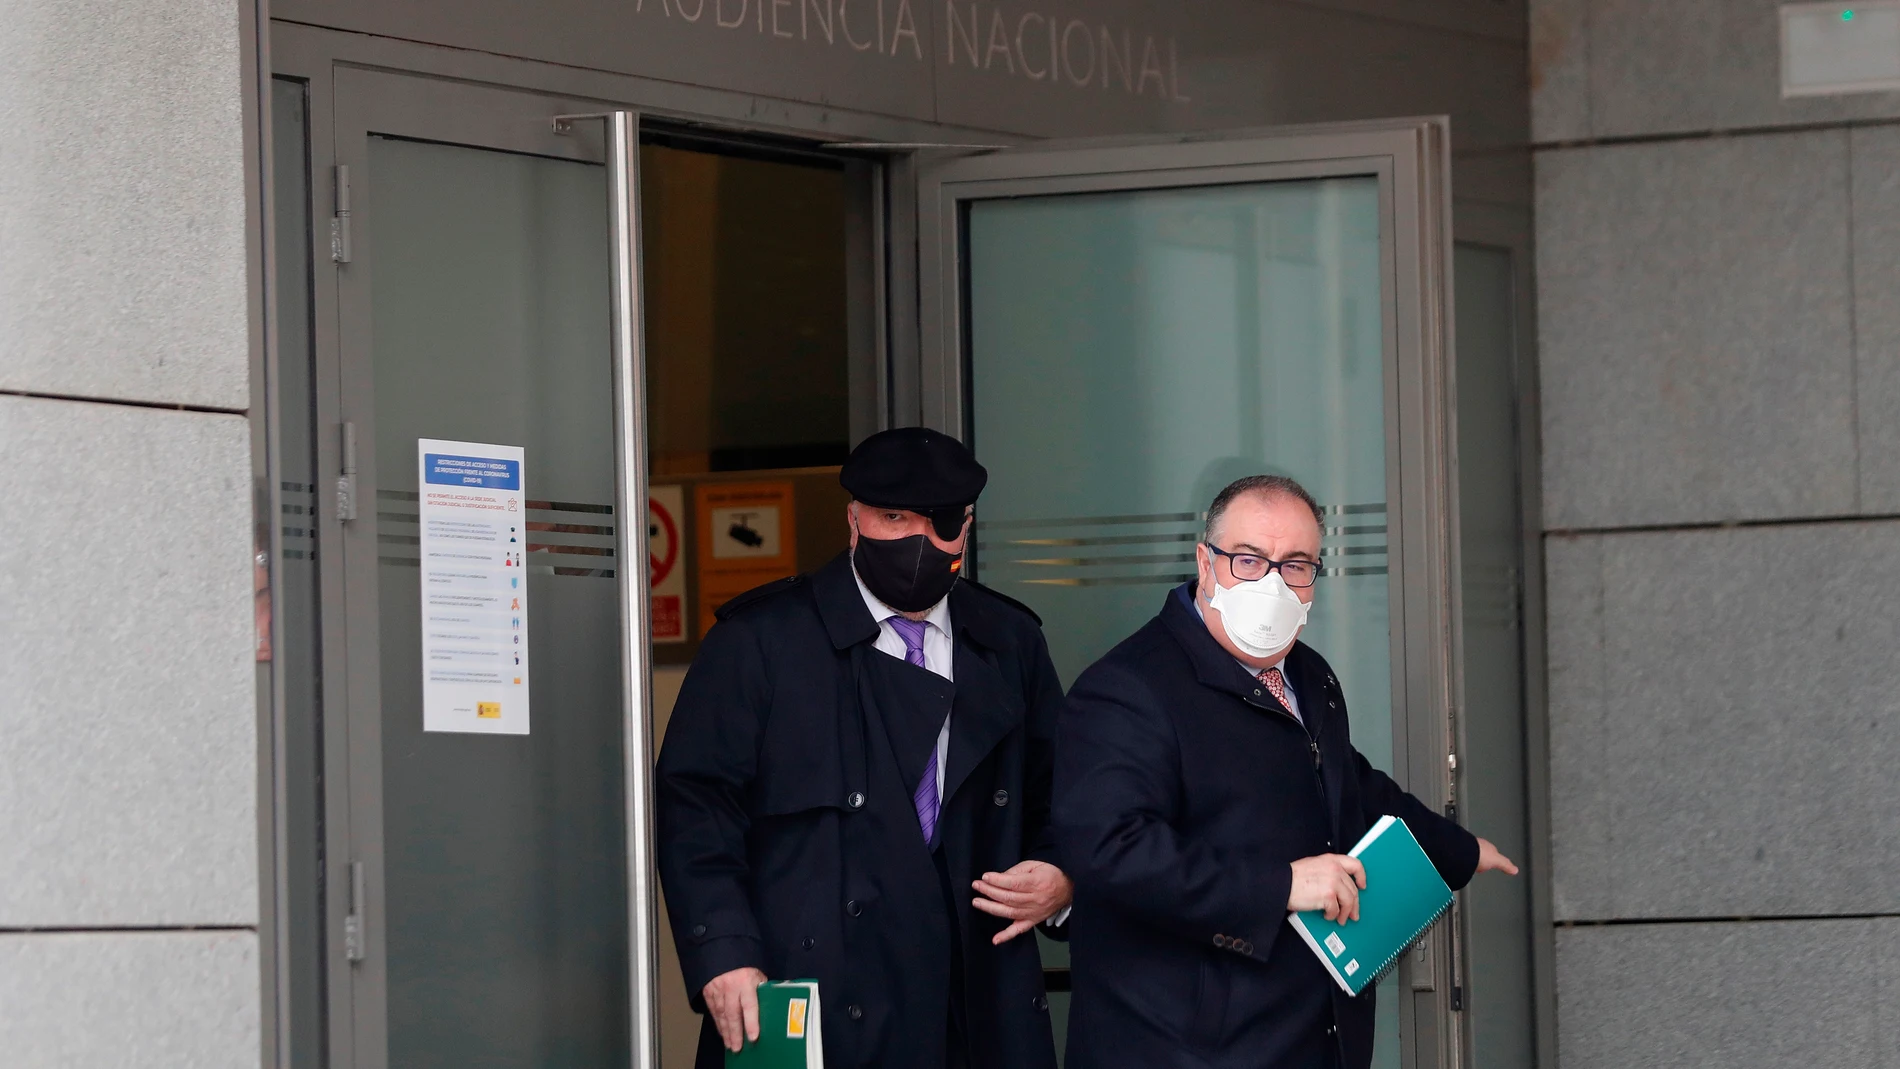 Villarejo entregó al juez un número de teléfono de Rajoy que demostraría su conocimiento sobre la Operación Kitchen